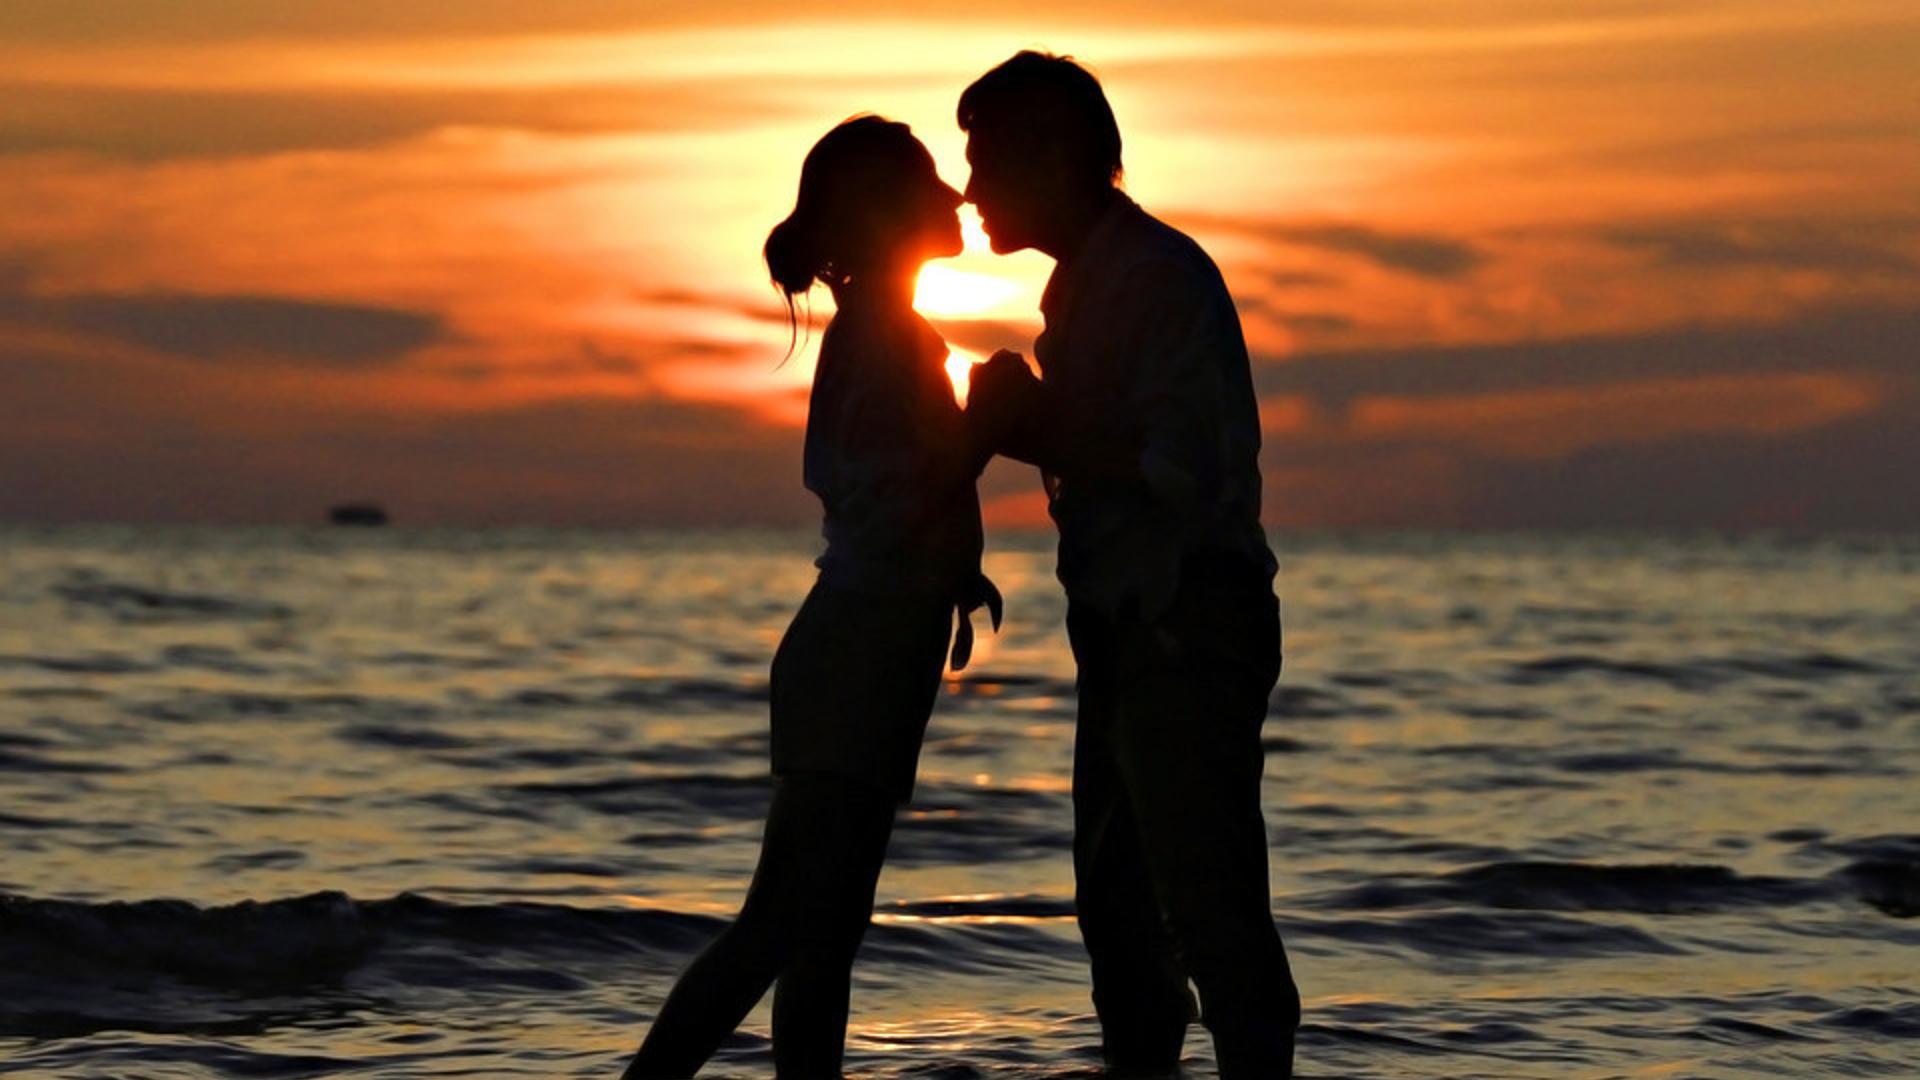 海边浪漫情侣接吻唯美风景桌面壁纸-壁纸图片大全